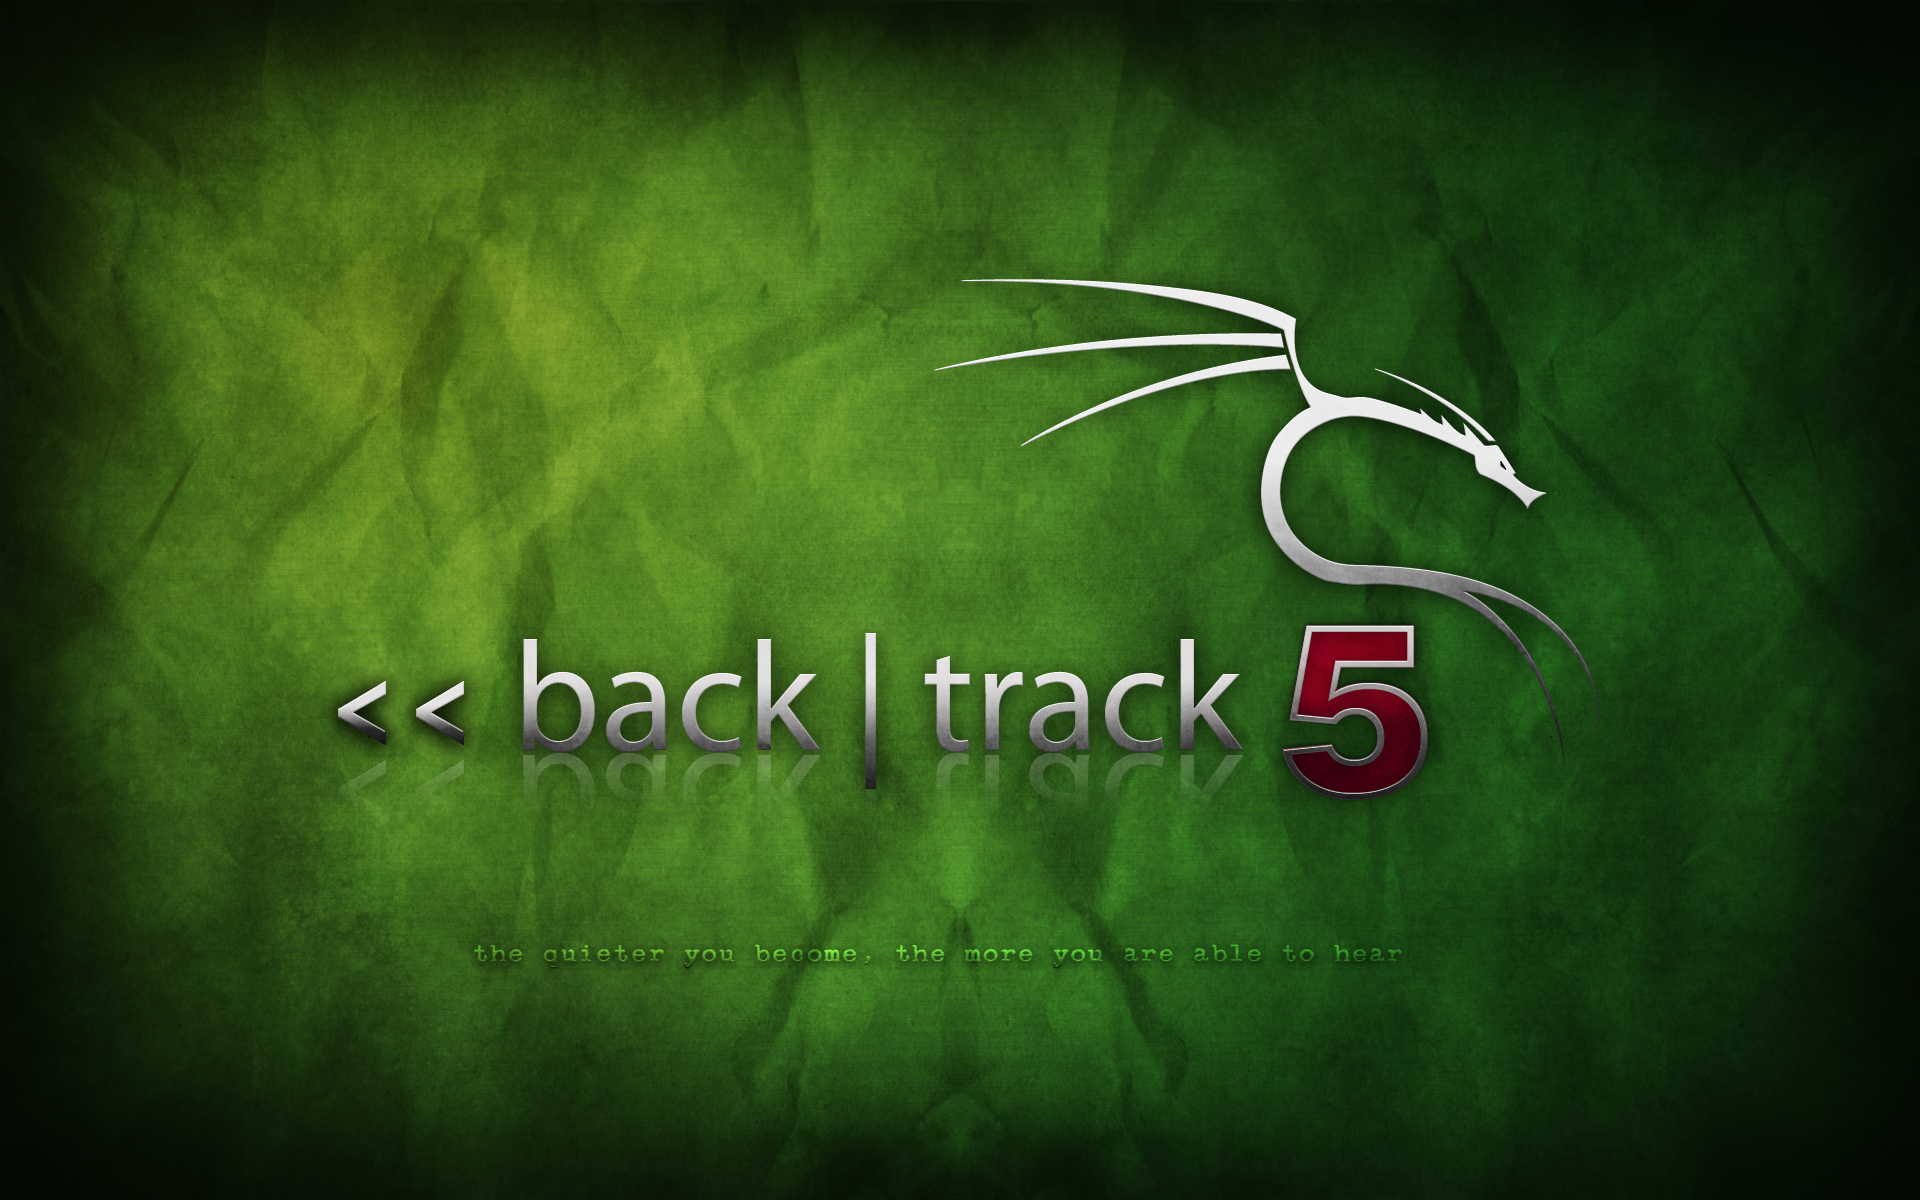 backtrack-5-green-1.png